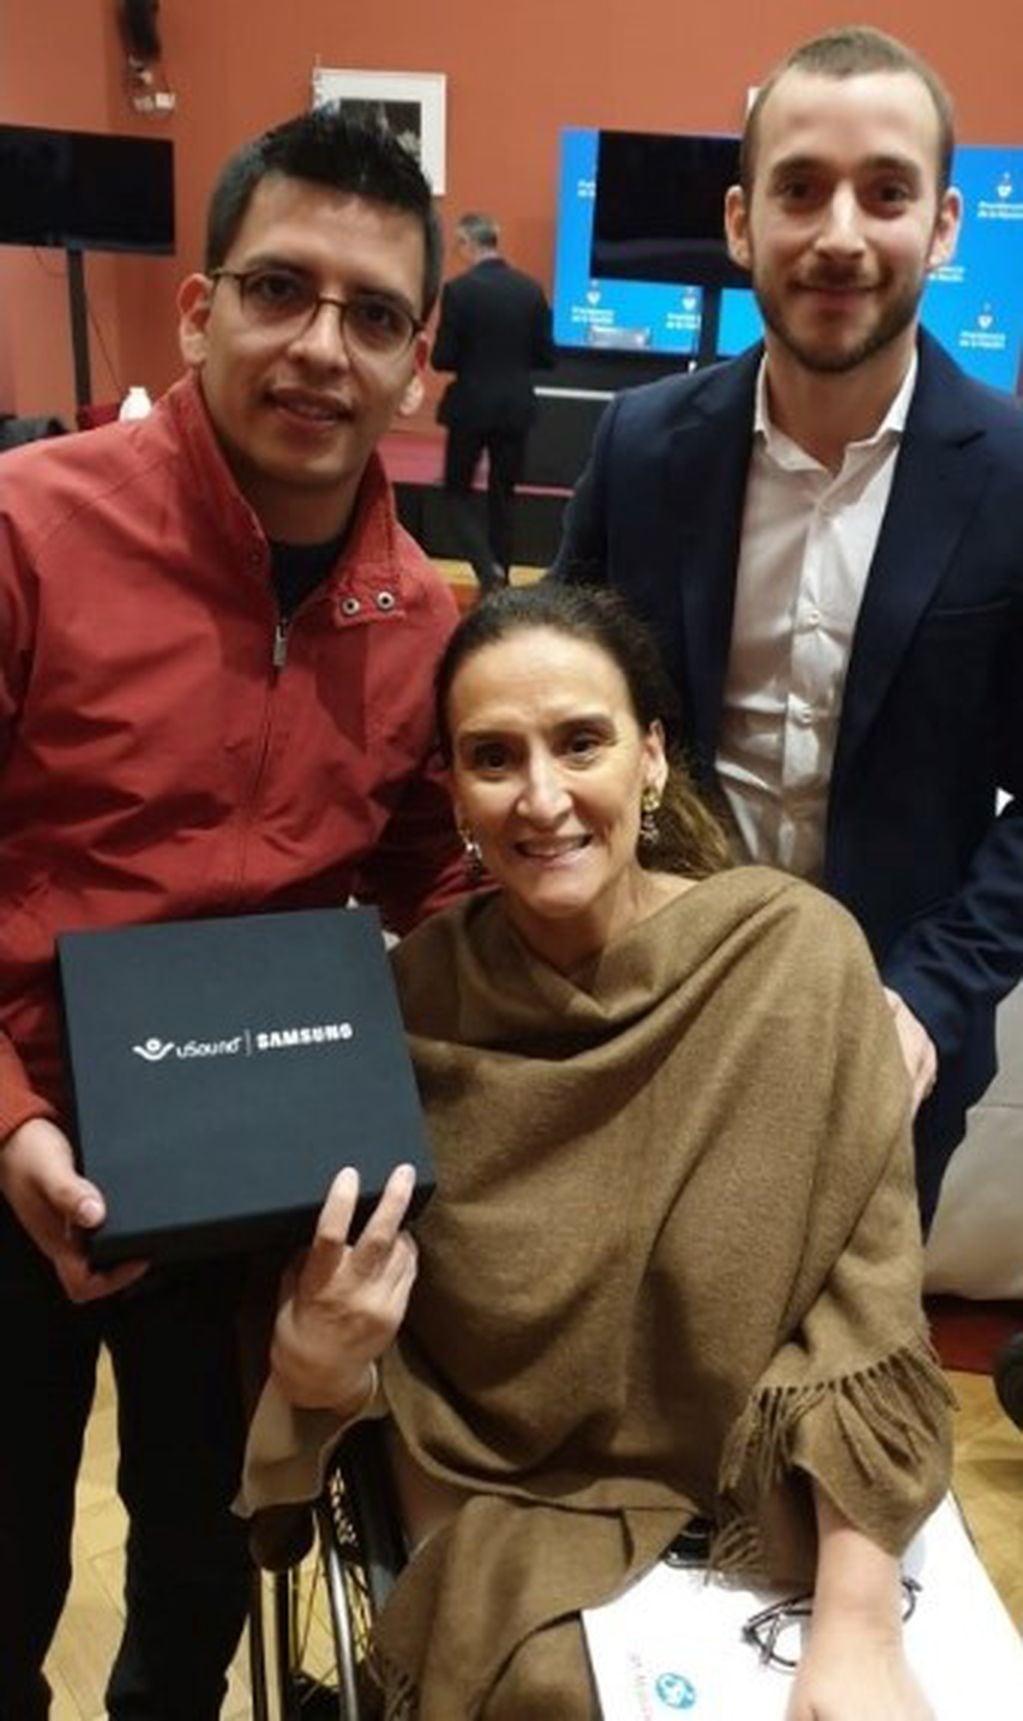 La vicepresidente Gabriela Michetti recibió un kit de auriculares de uSound, de manos de Ezequiel Escobar.